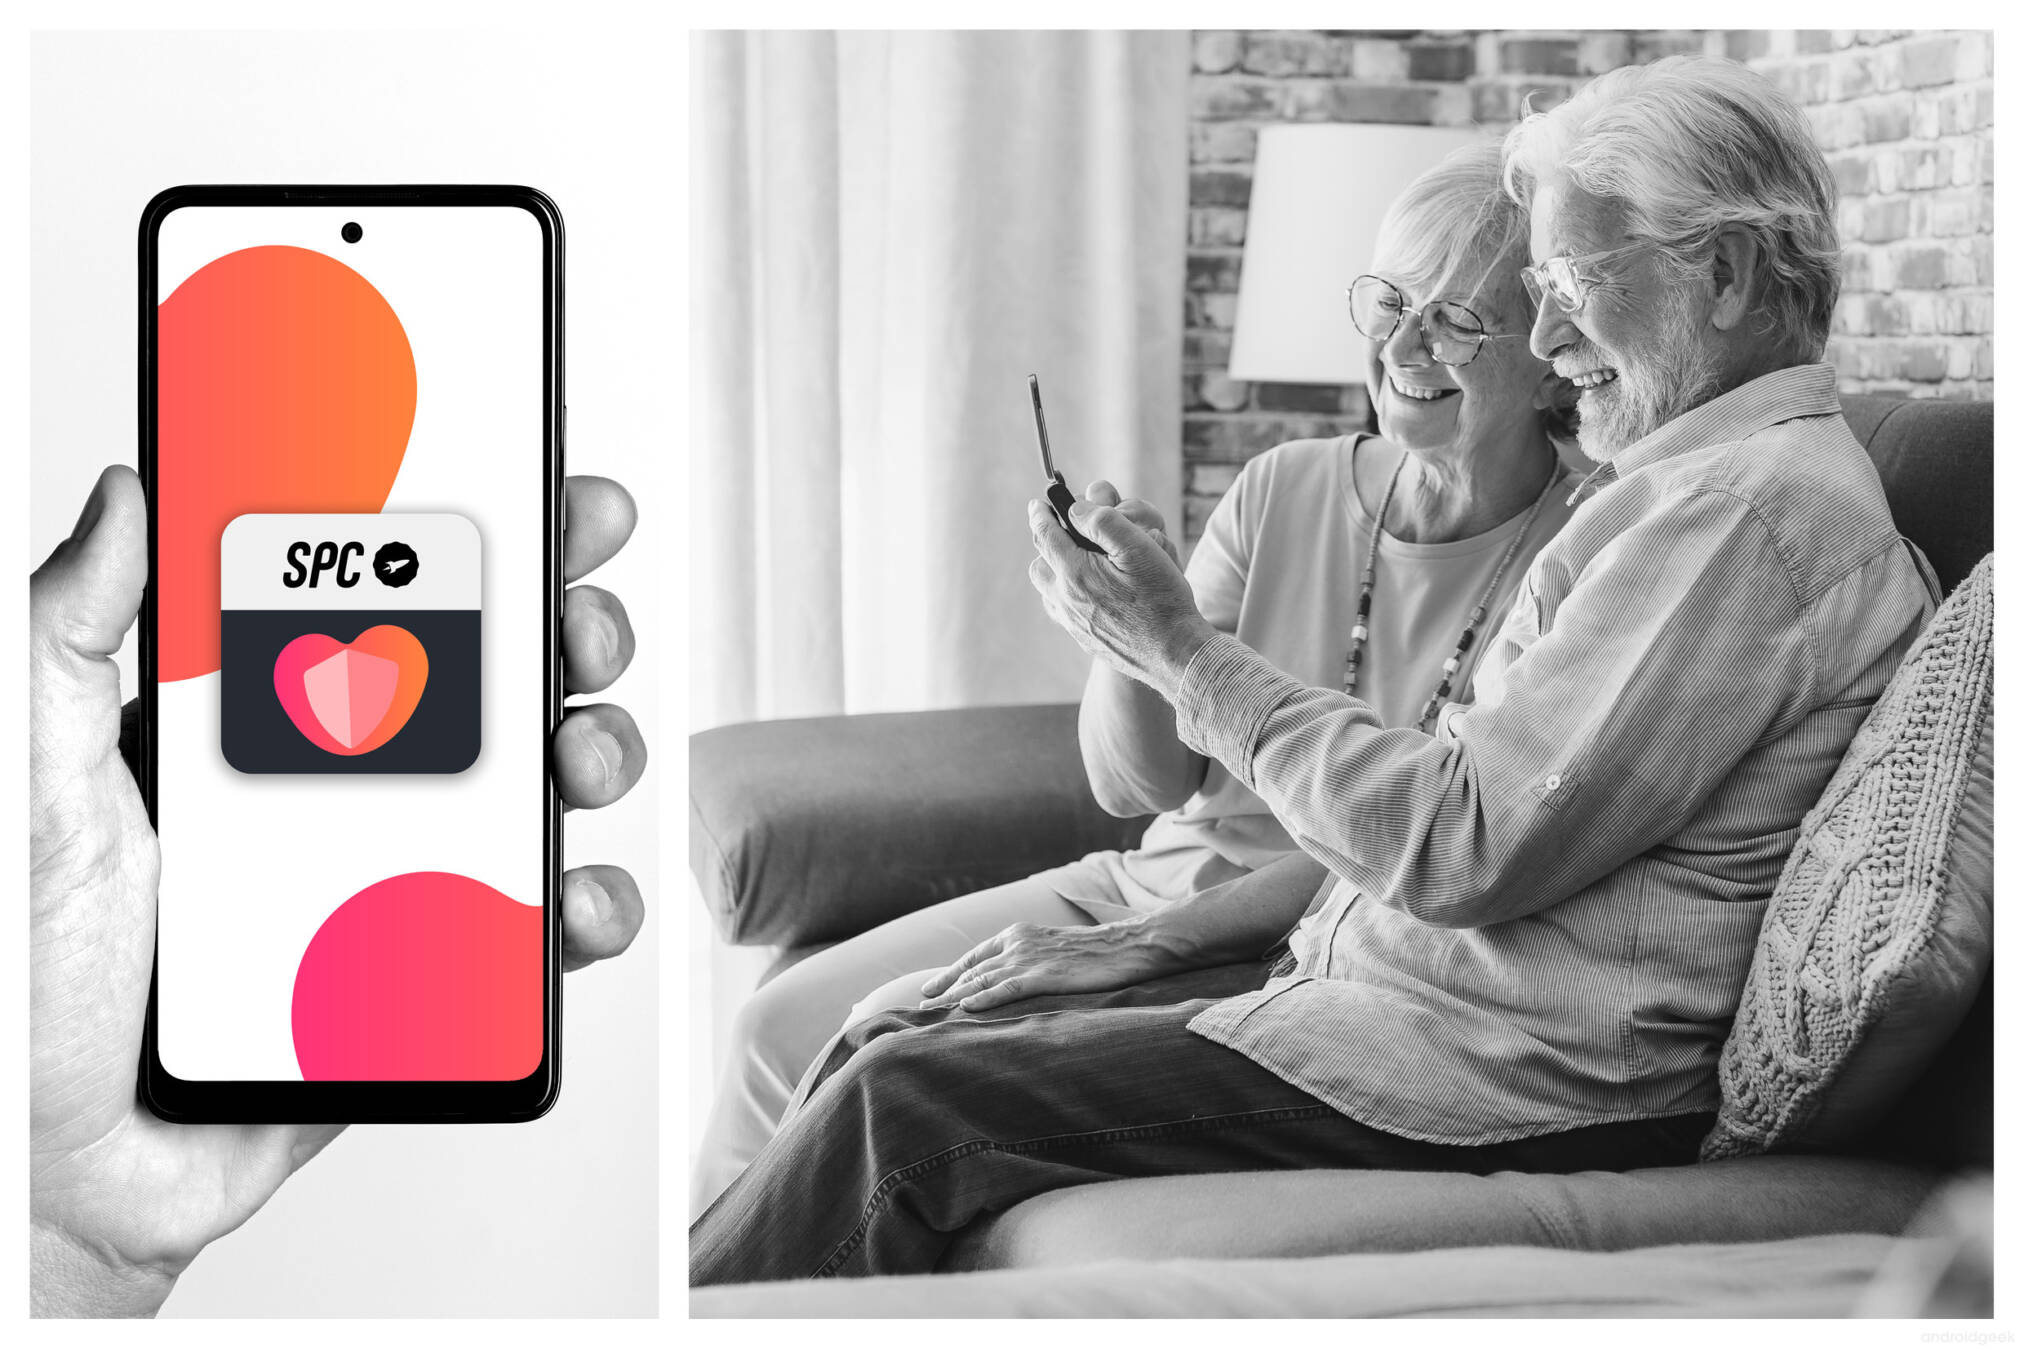 SPC apresenta SPC CARE, a primeira aplicação de assistência à distância para pessoas idosas com telemóveis "não inteligentes". 3